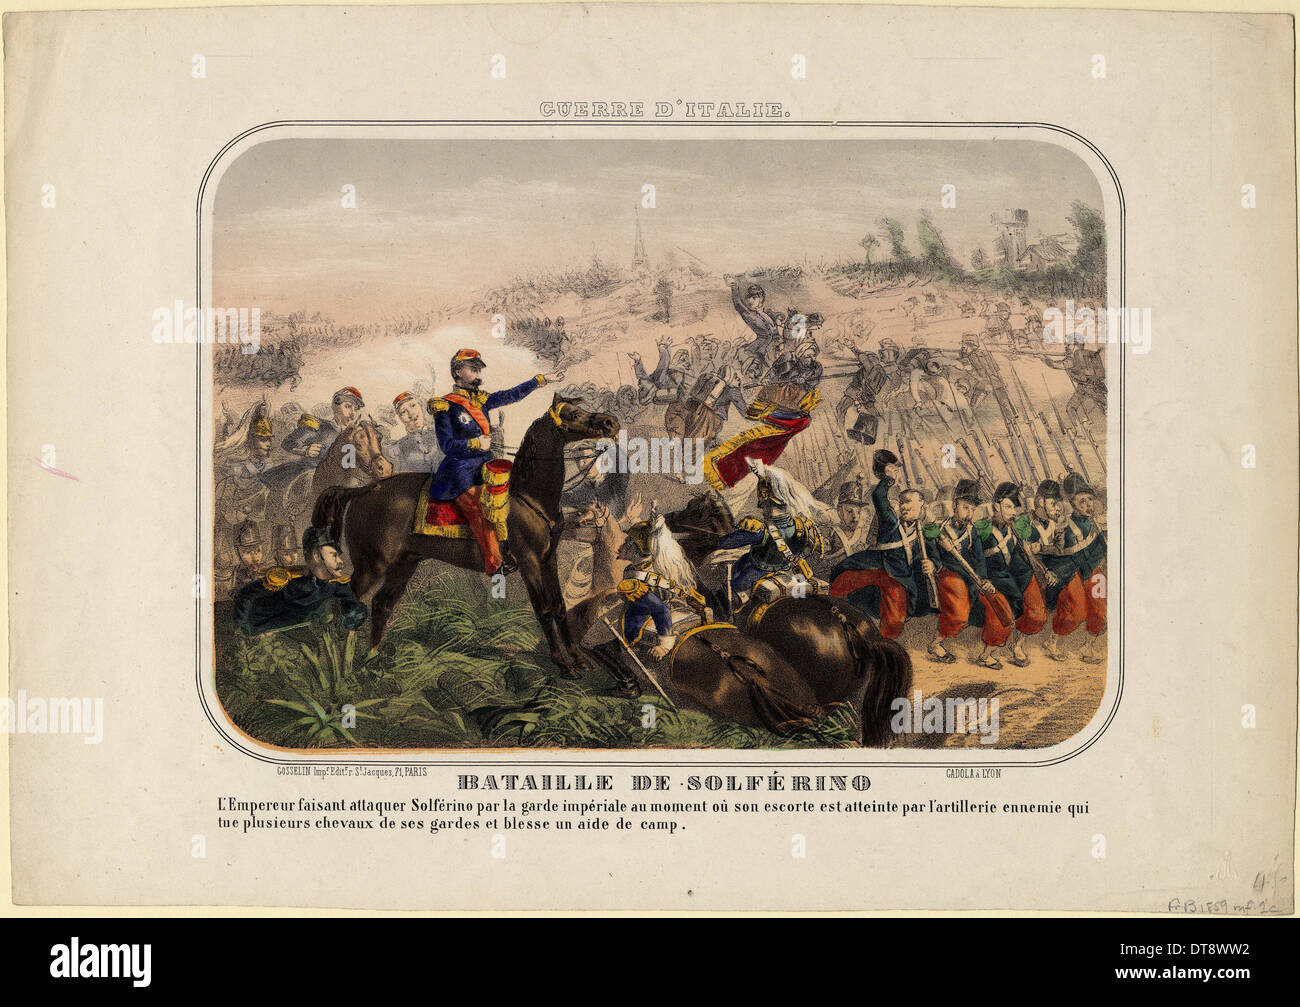 File:Bataille de Solferino 1859.jpg - Wikimedia Commons